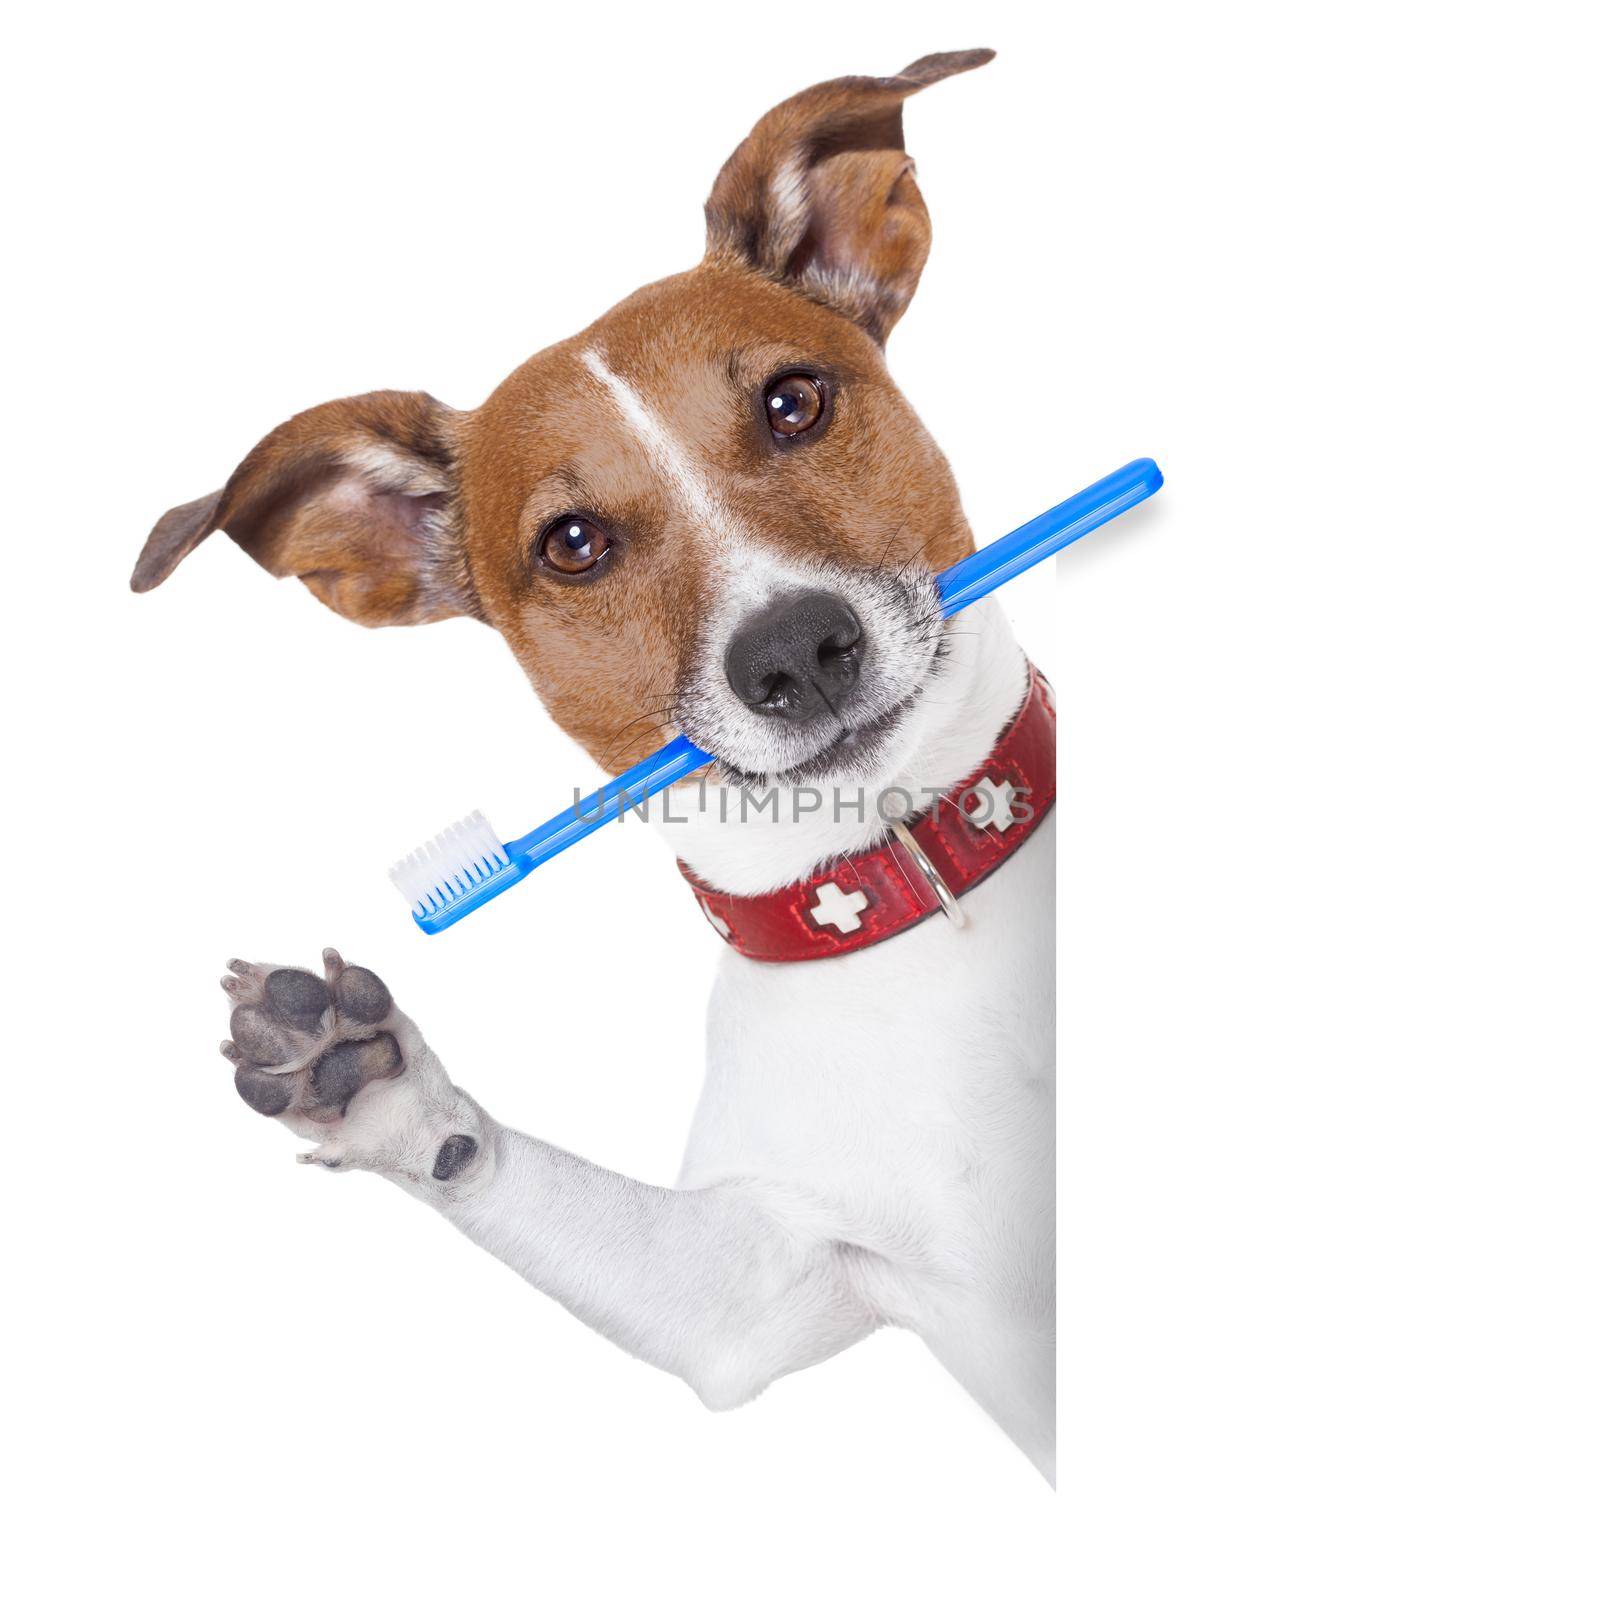 toothbrush dog by Brosch